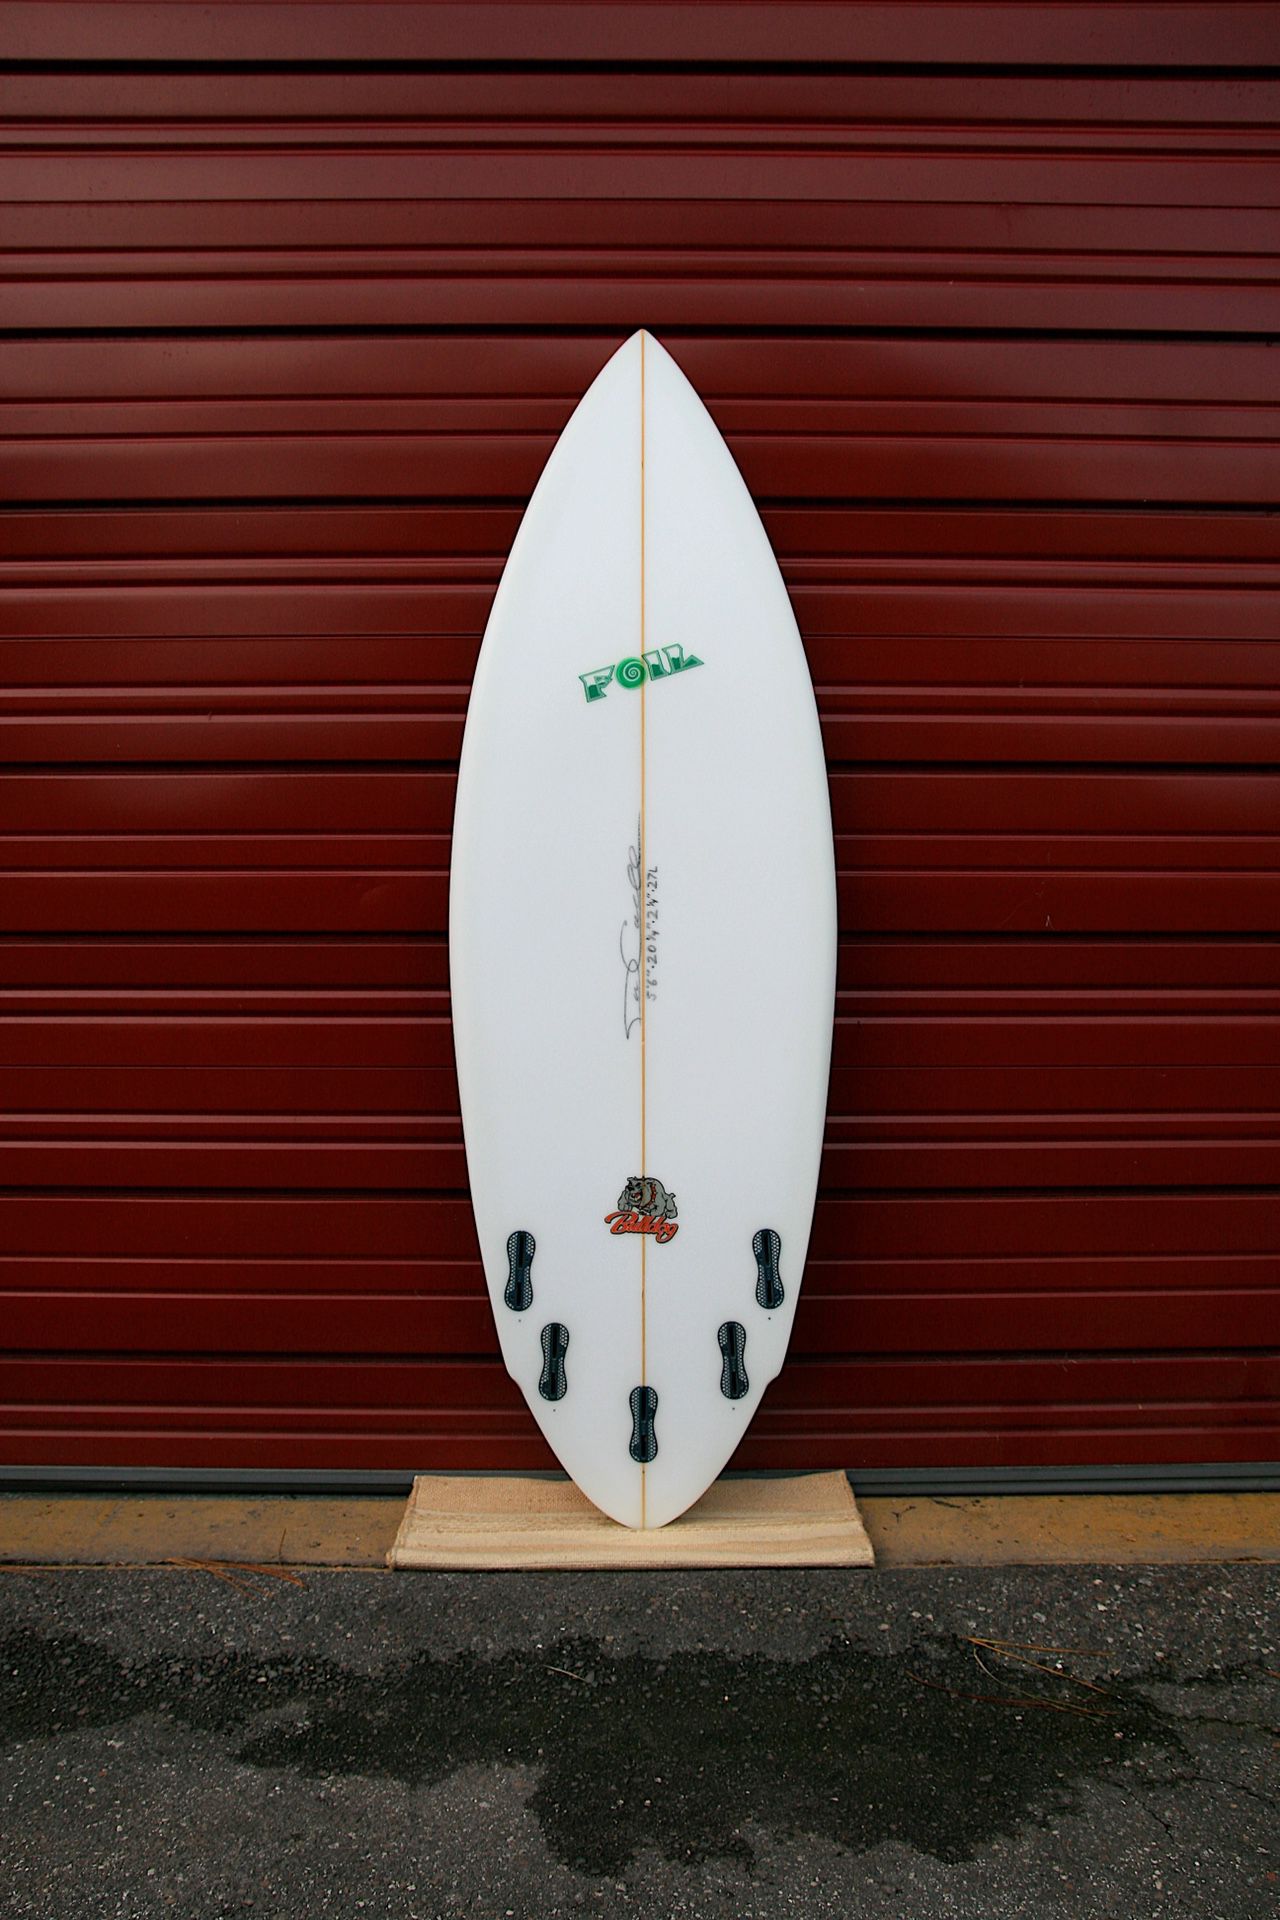 New 5’6” FOIL “The Bulldog” short board surfboard